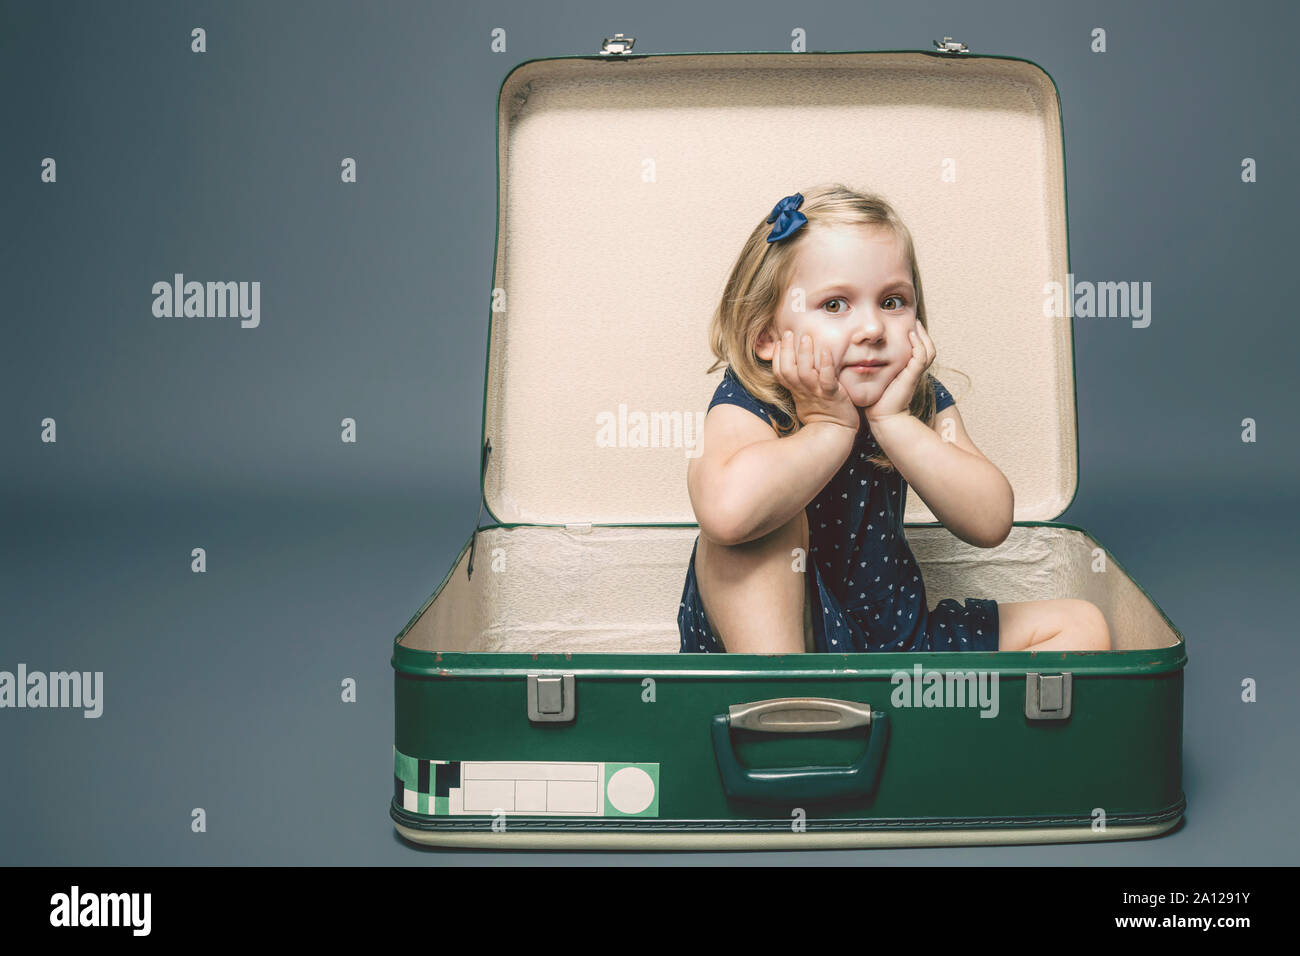 3 anno vecchia ragazza caucasica con espressione sognante seduta all'interno di una valigia vintage. Studio shot. Foto Stock